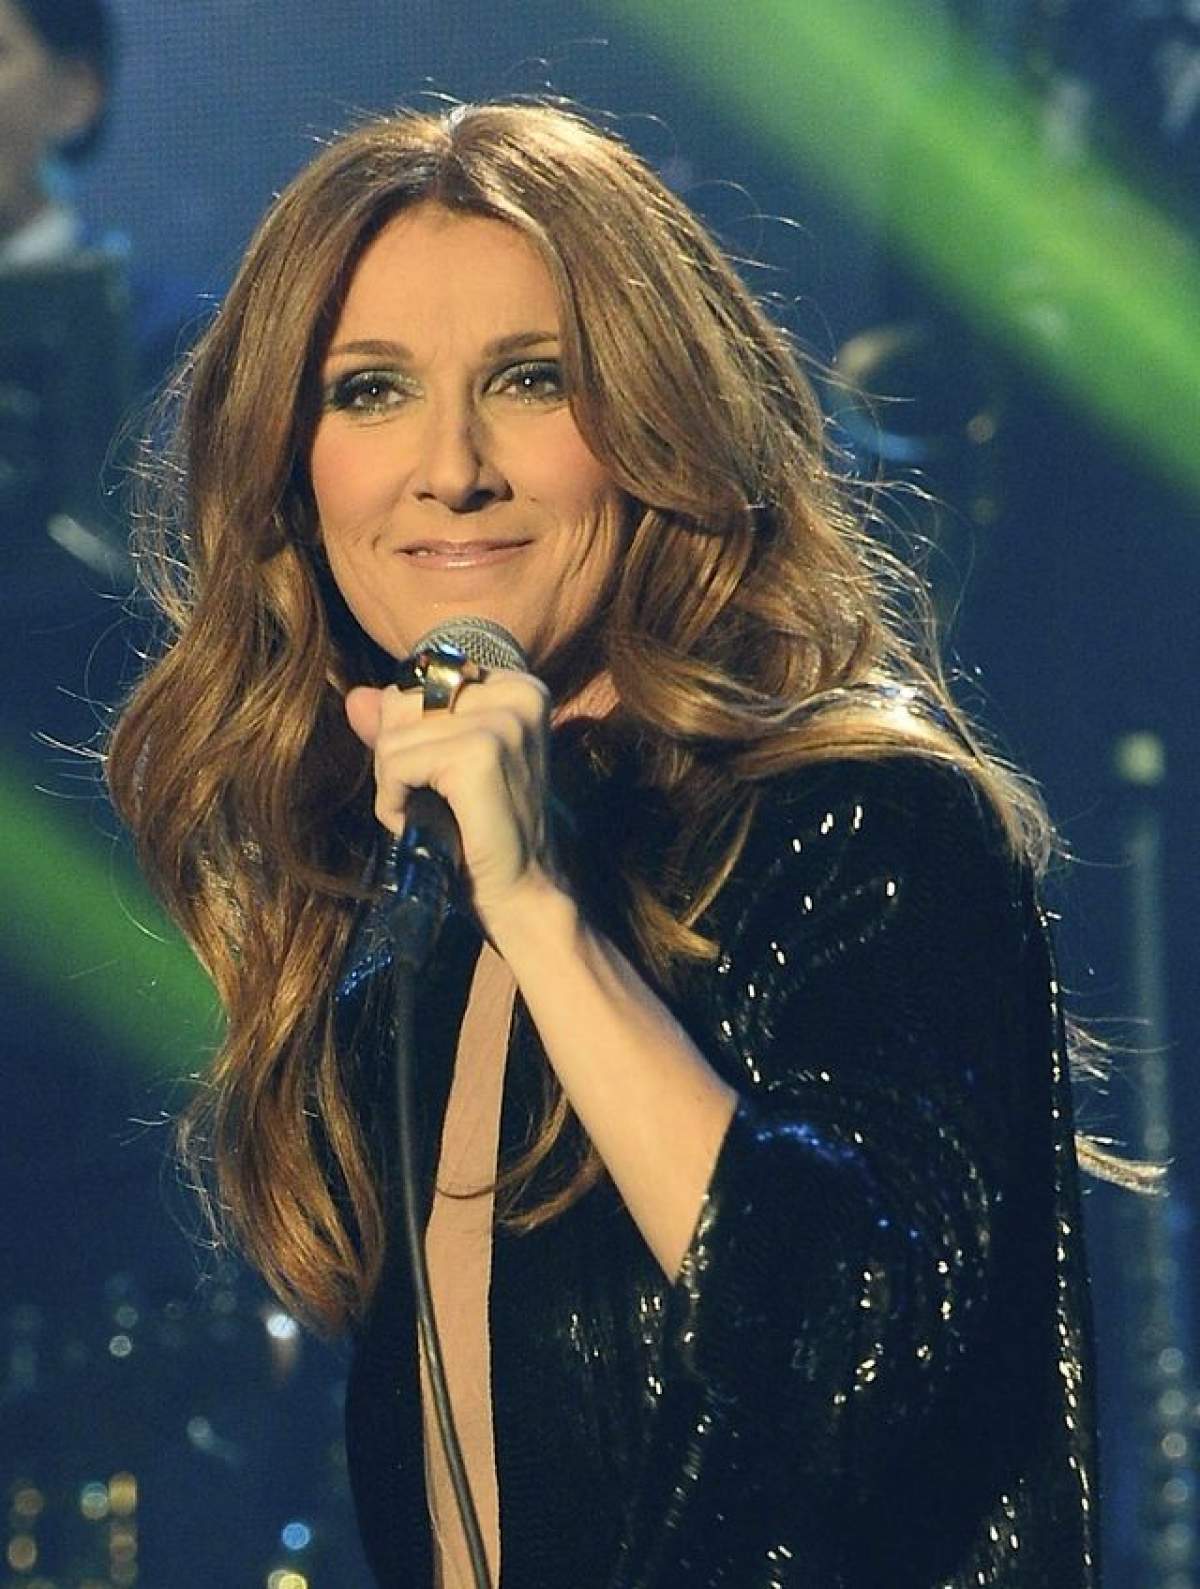 Celine Dion şi-a lăsat singur soţul grav bolnav şi a susţinut un concert! Care este explicaţia vedetei